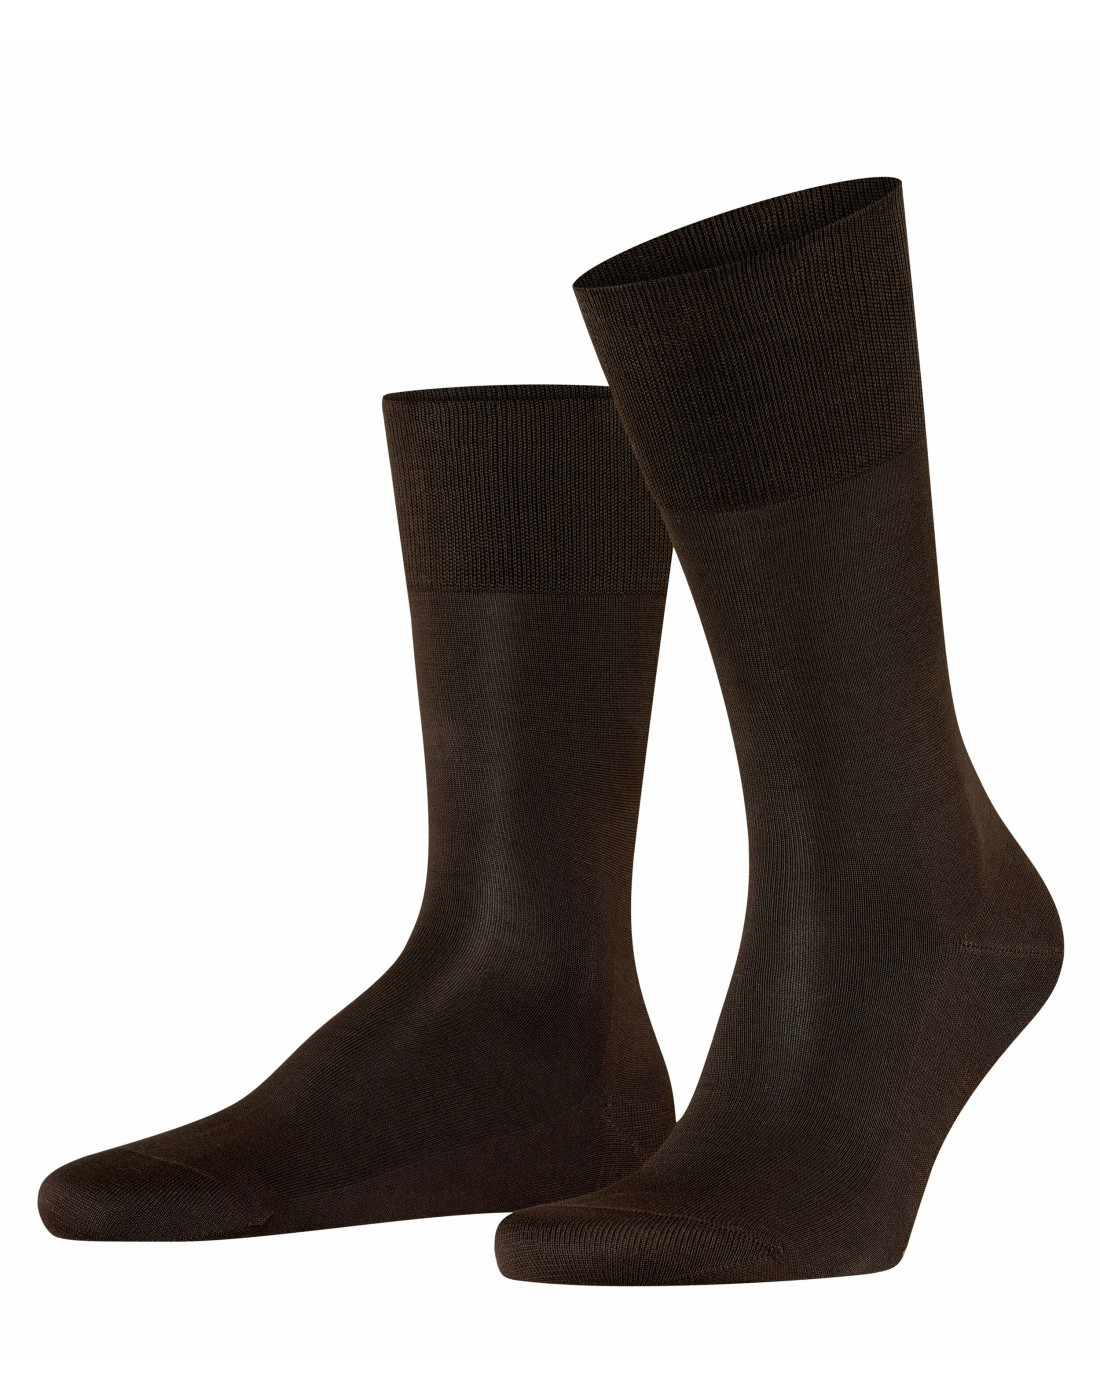 Носки коричневые мужские Falke STIAGO SO 14662/5930-1